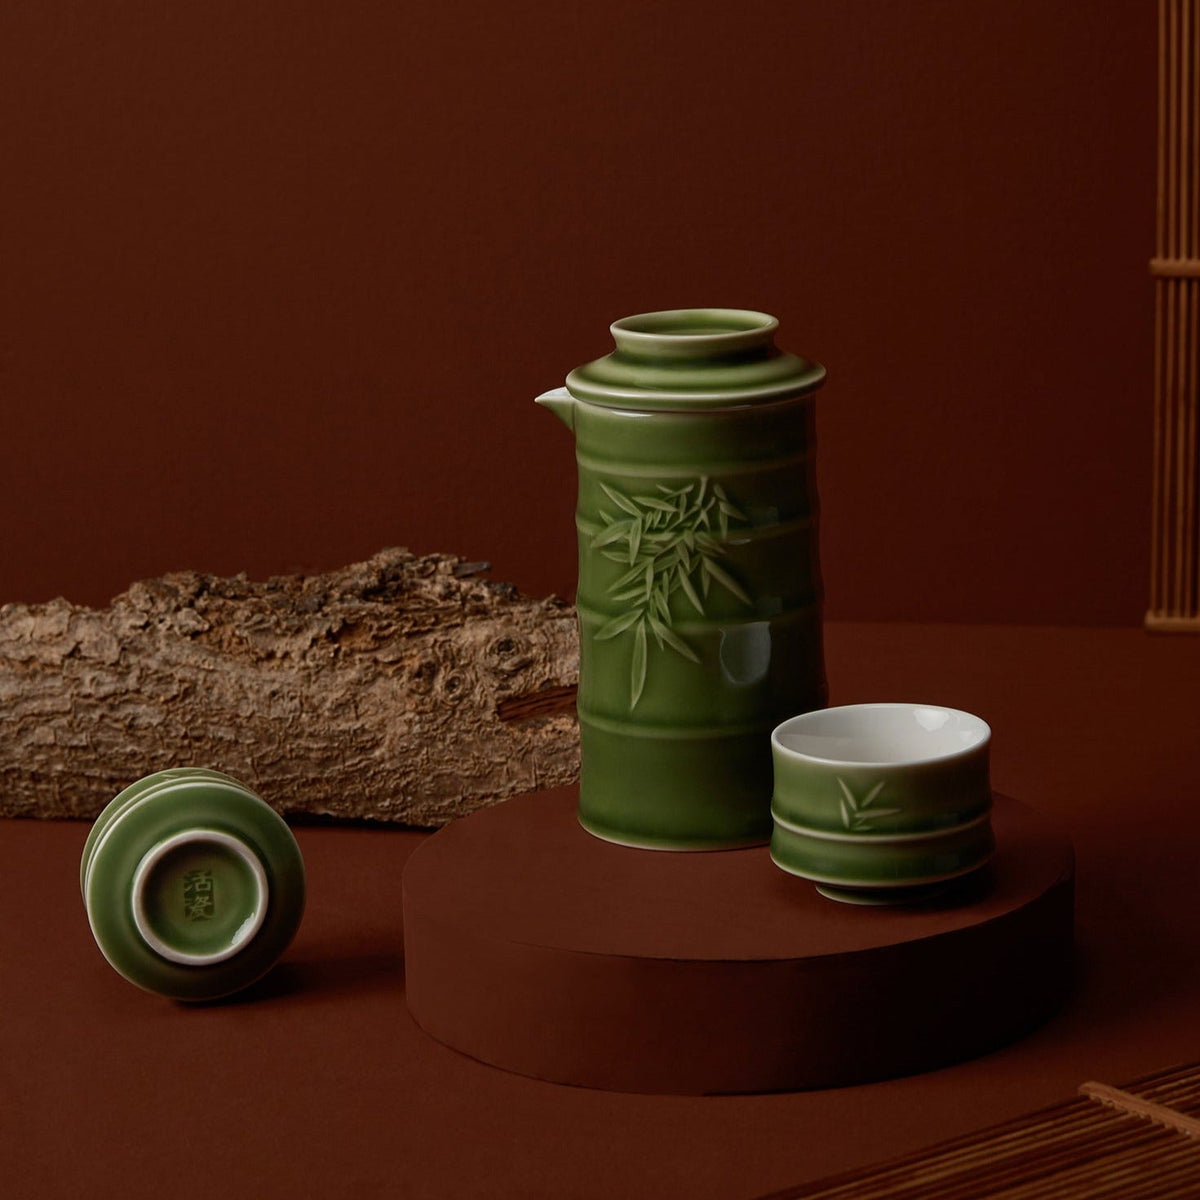 Bamboo Kung Fu Tea Set - 1 Pot with 2 Cups, Ceramics -11